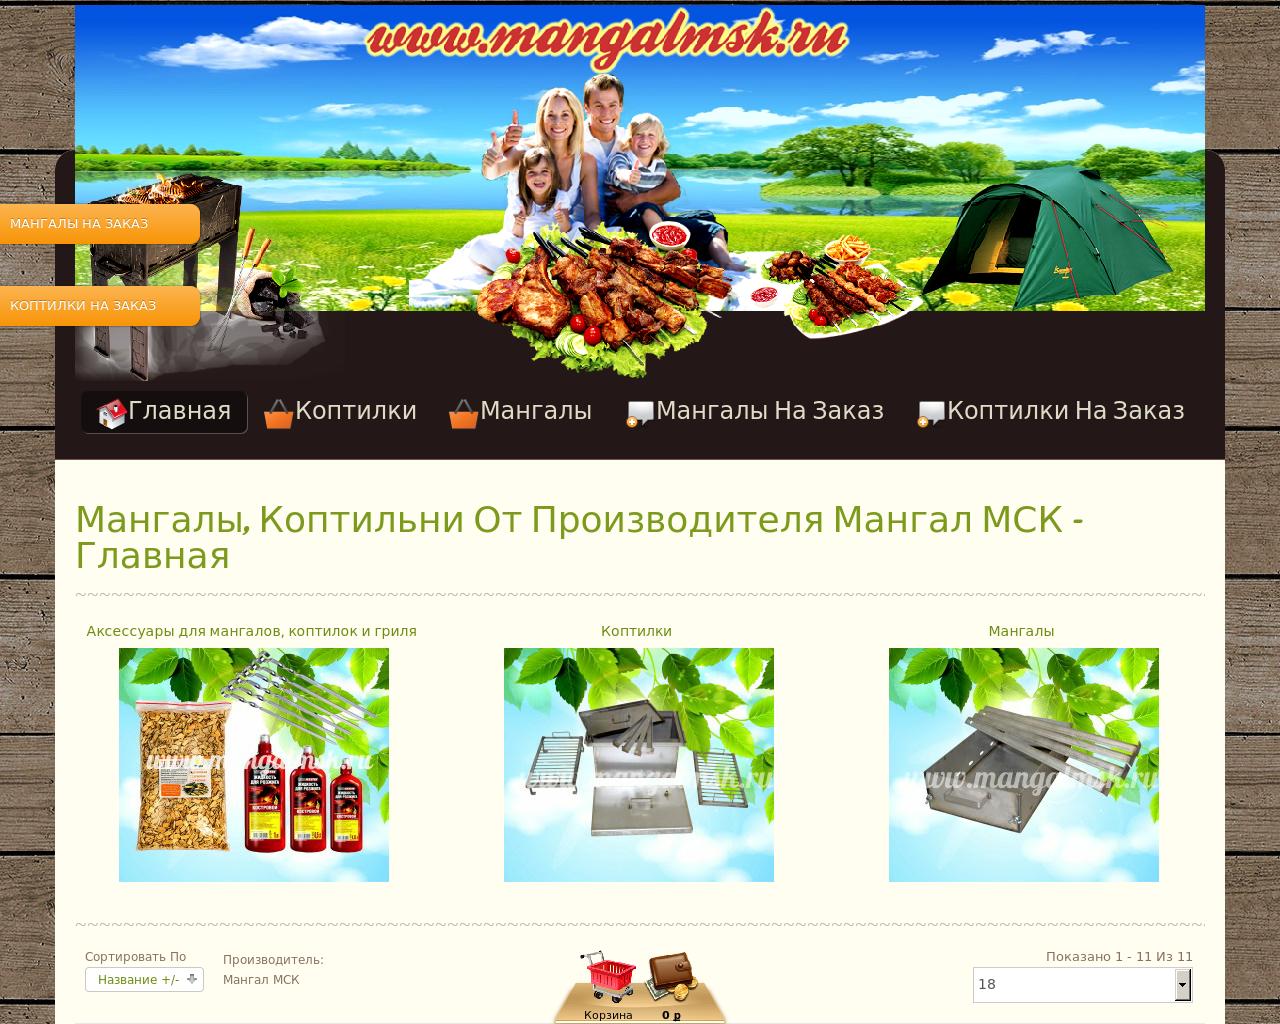 Изображение сайта mangalmsk.ru в разрешении 1280x1024